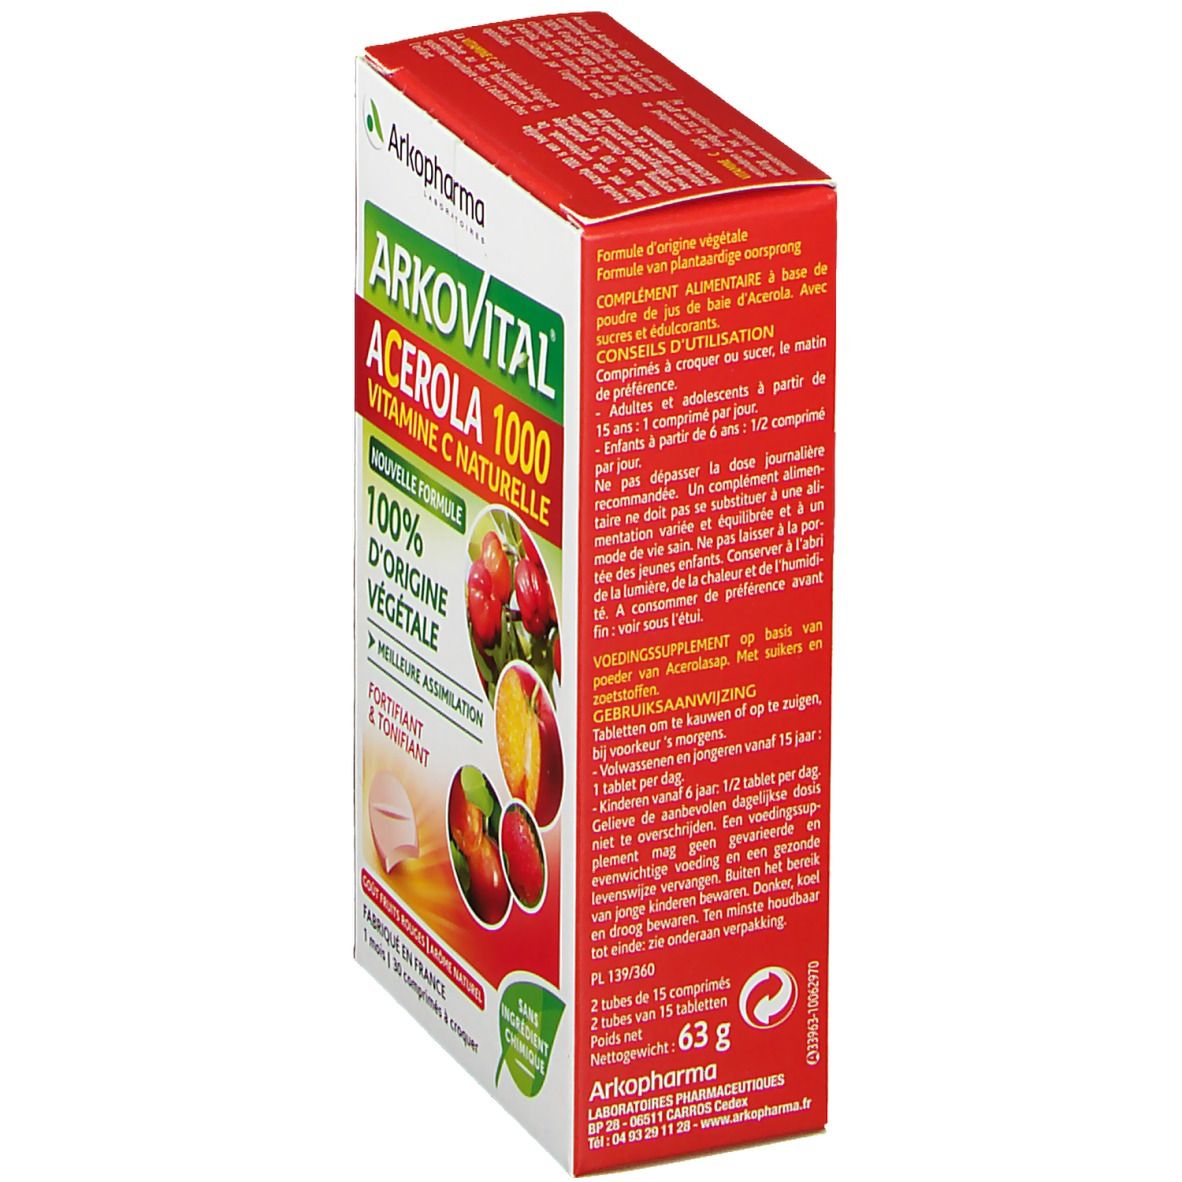 Arkopharma Arkovital® Acérola 1000 Vitamin C